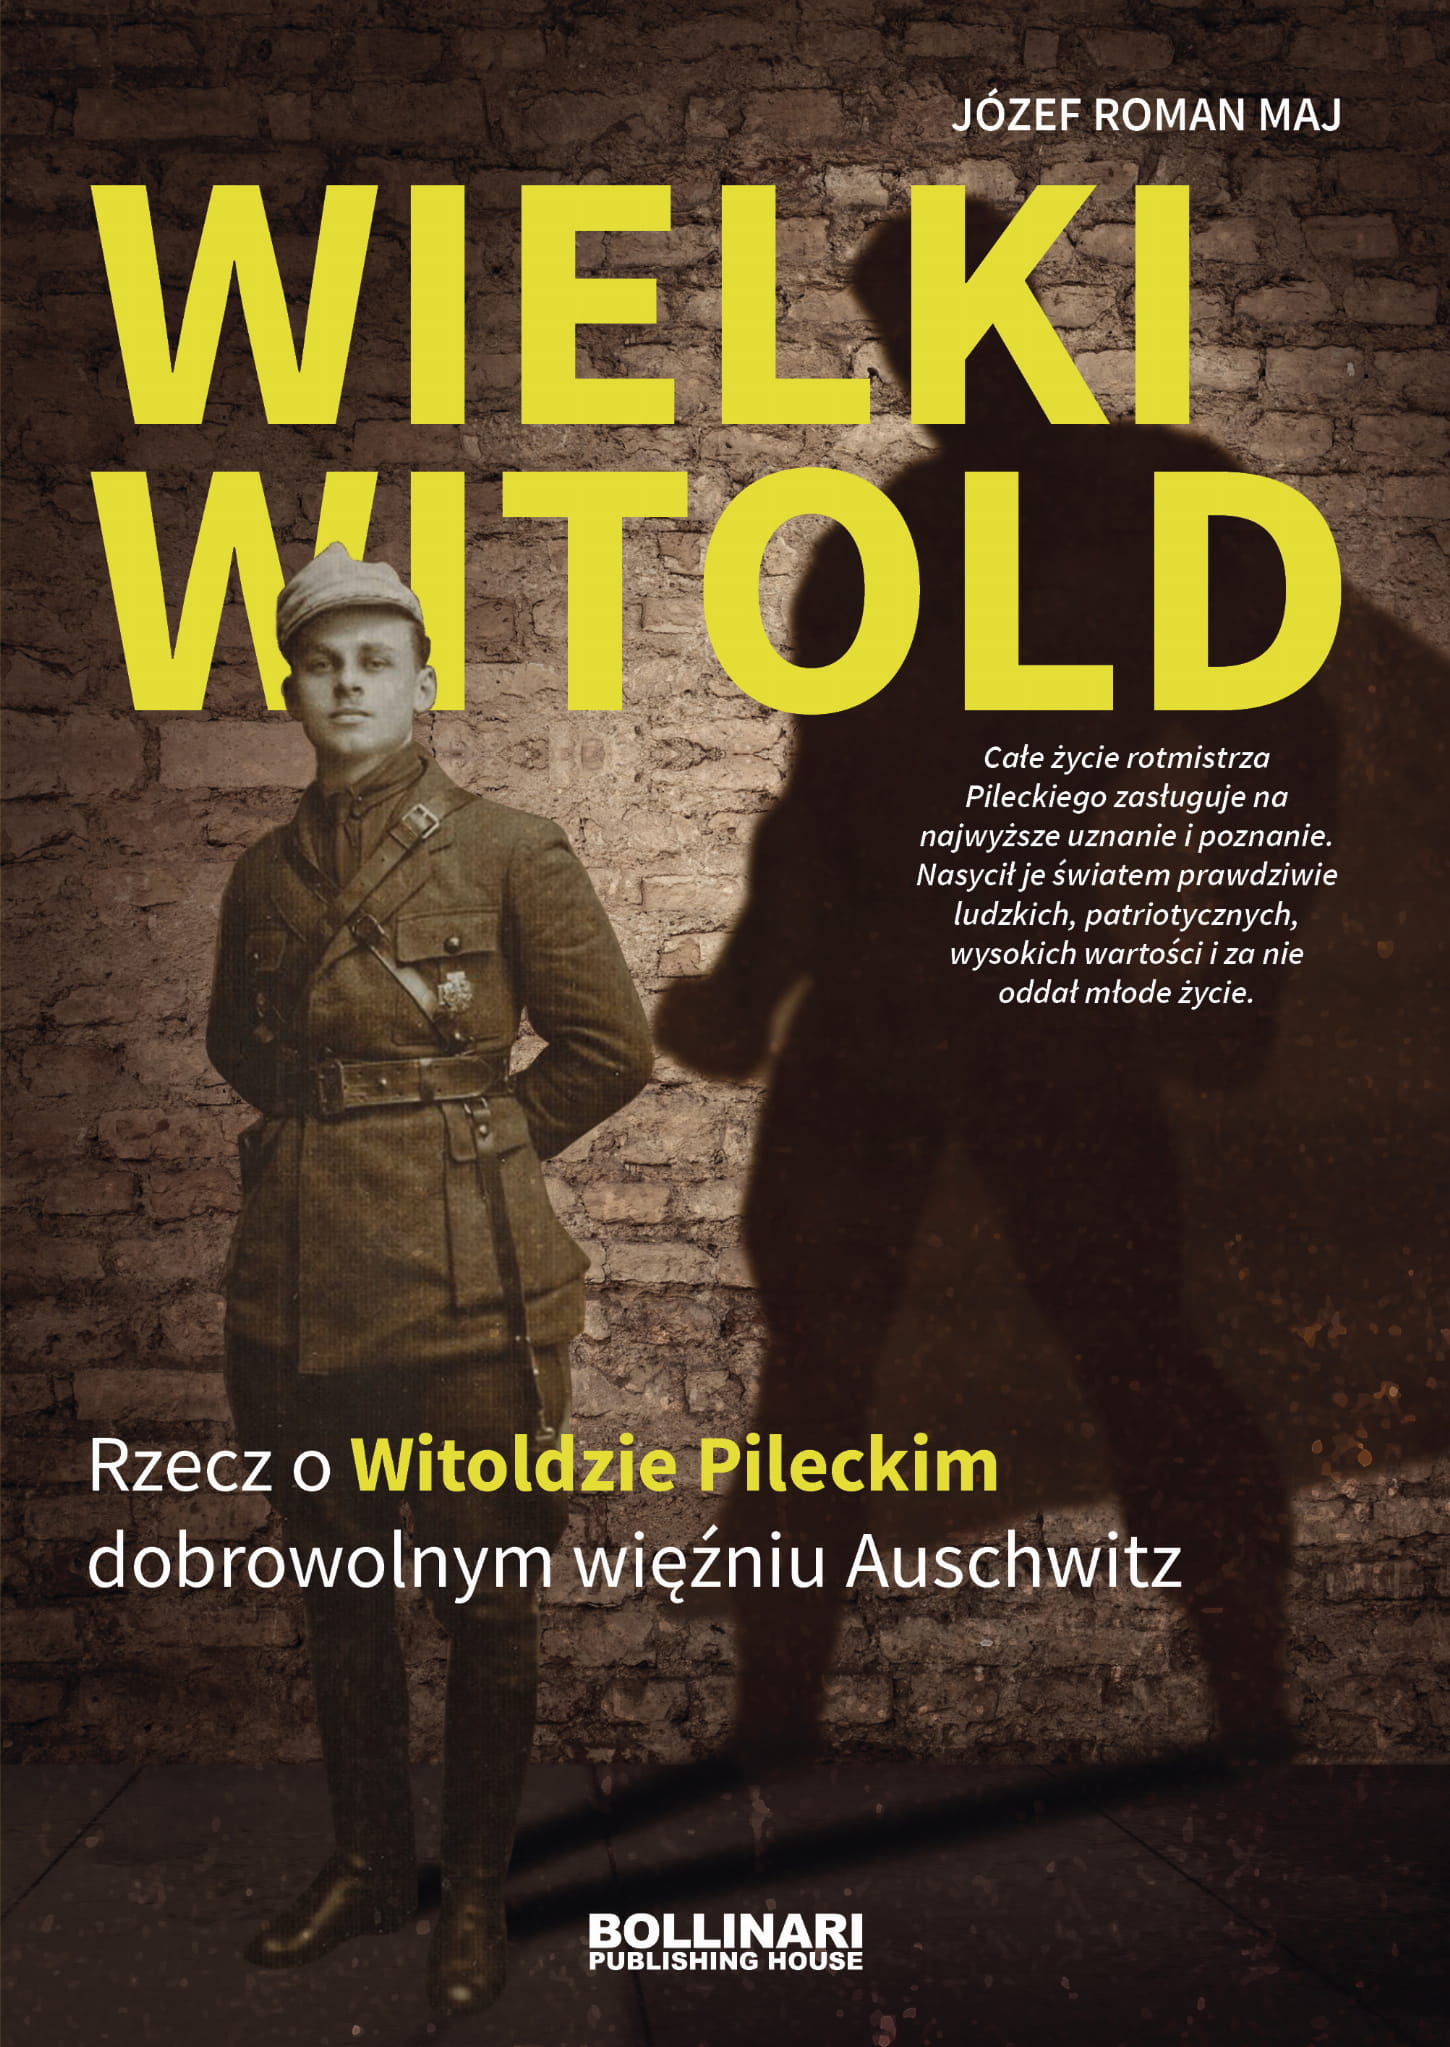 Wielki Witold Rzecz o Witoldzie Pileckim (J.R.Maj)